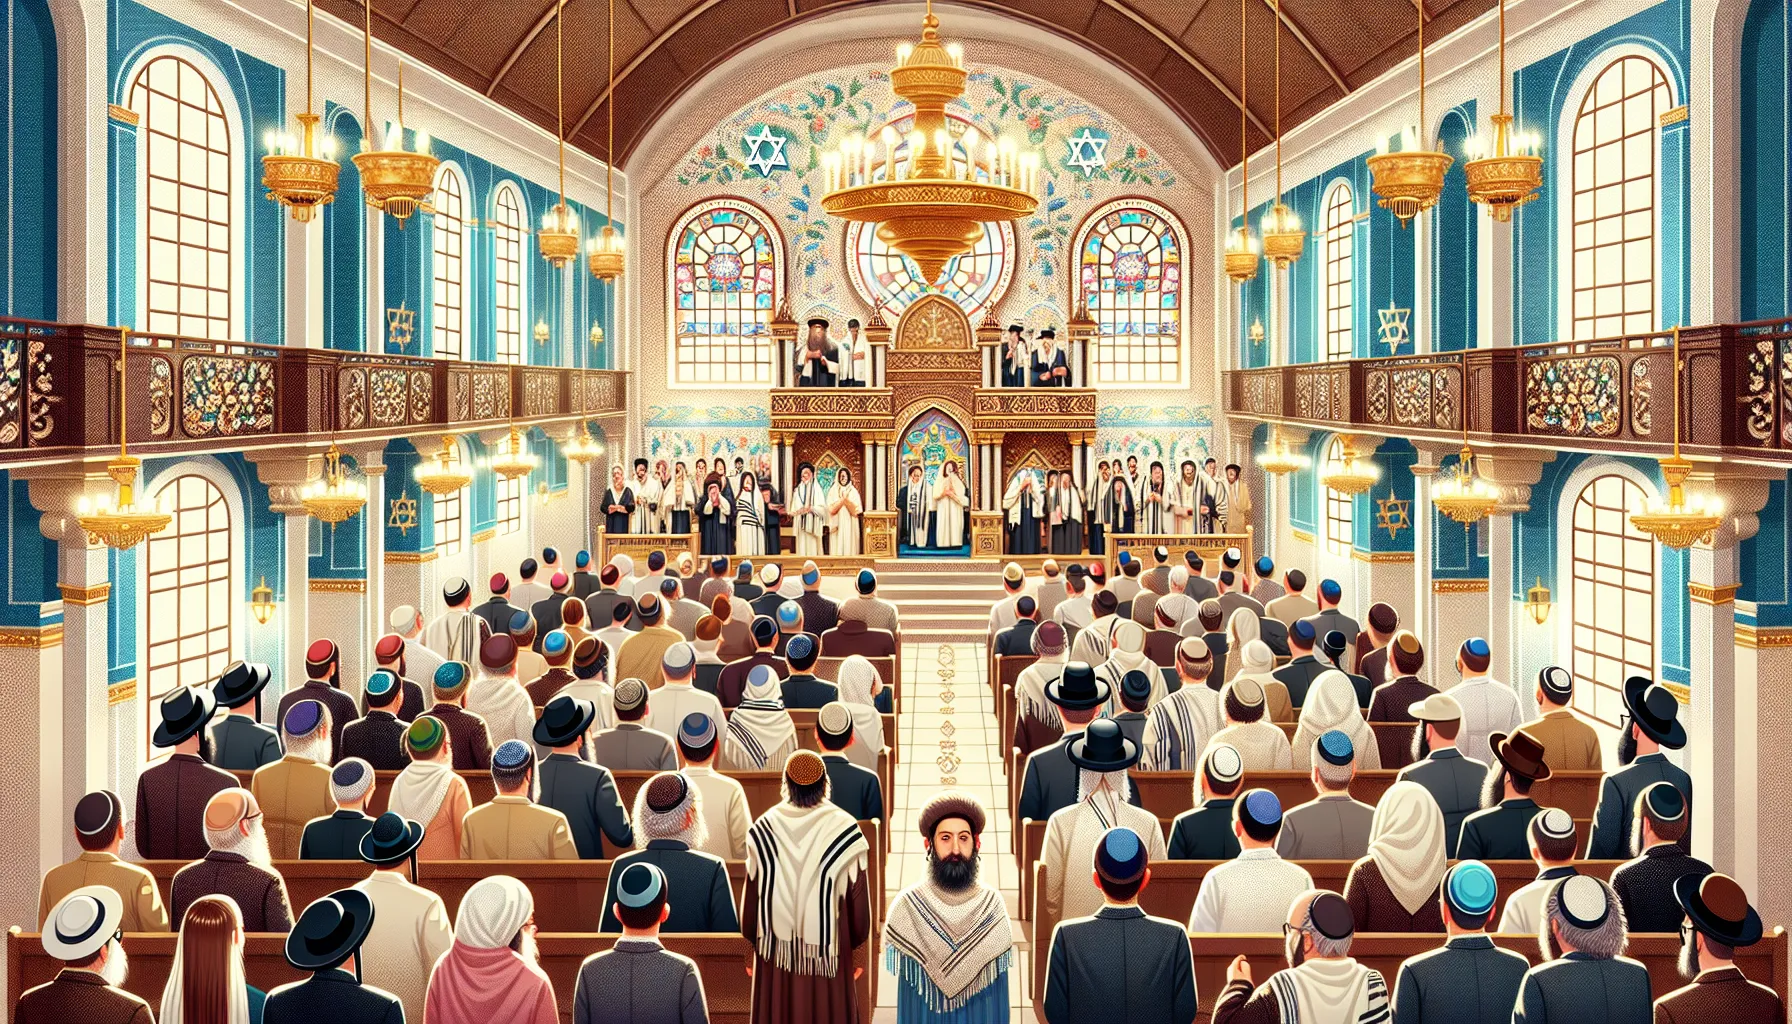 Imagen ilustrativa de una sinagoga durante una festividad religiosa judía, representando la práctica del judaísmo ortodoxo.